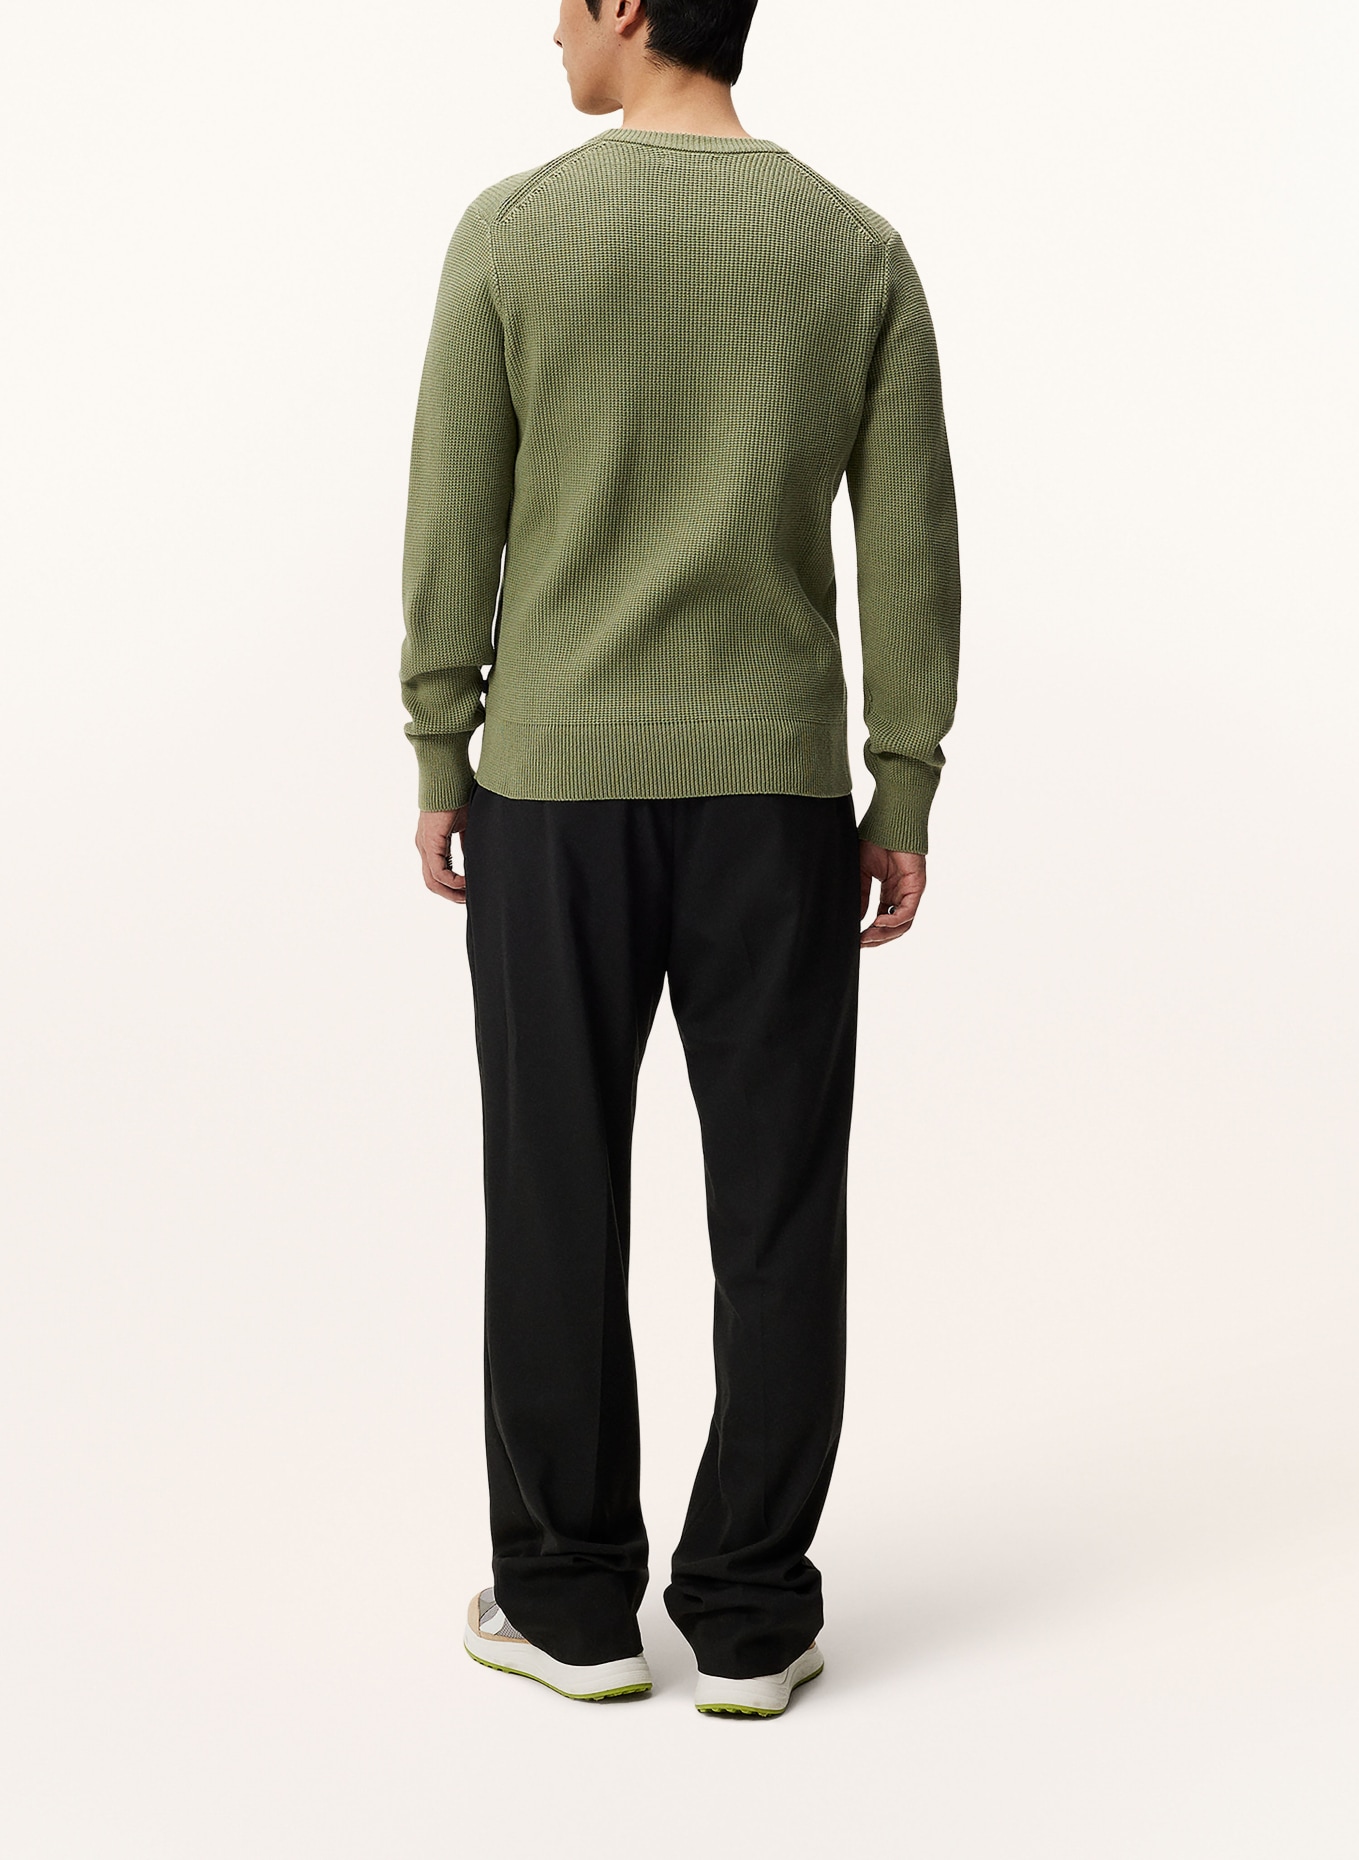 J.LINDEBERG Sweater, Color: OLIVE (Image 3)